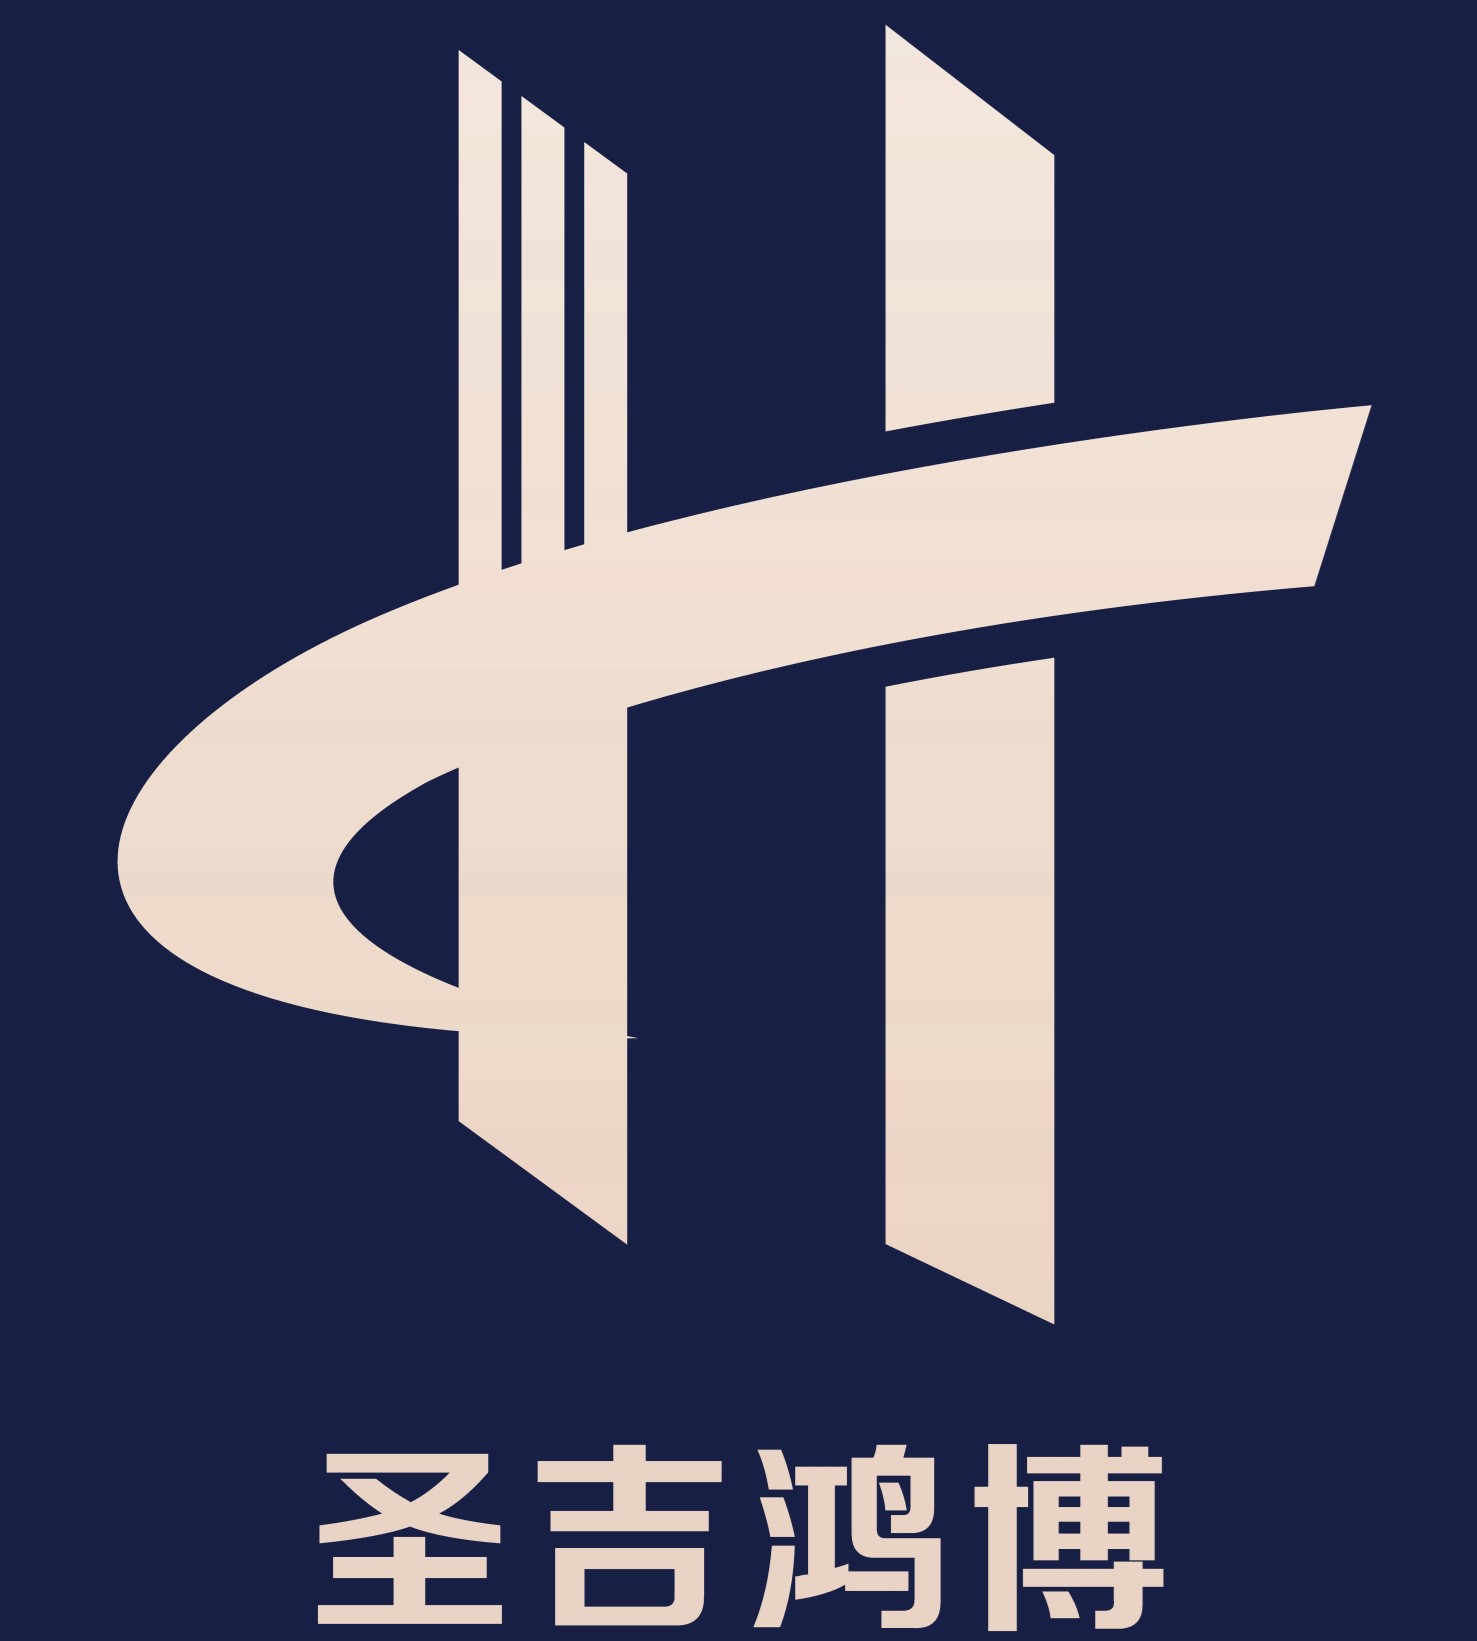 四川圣吉鸿博建筑材料有限公司logo